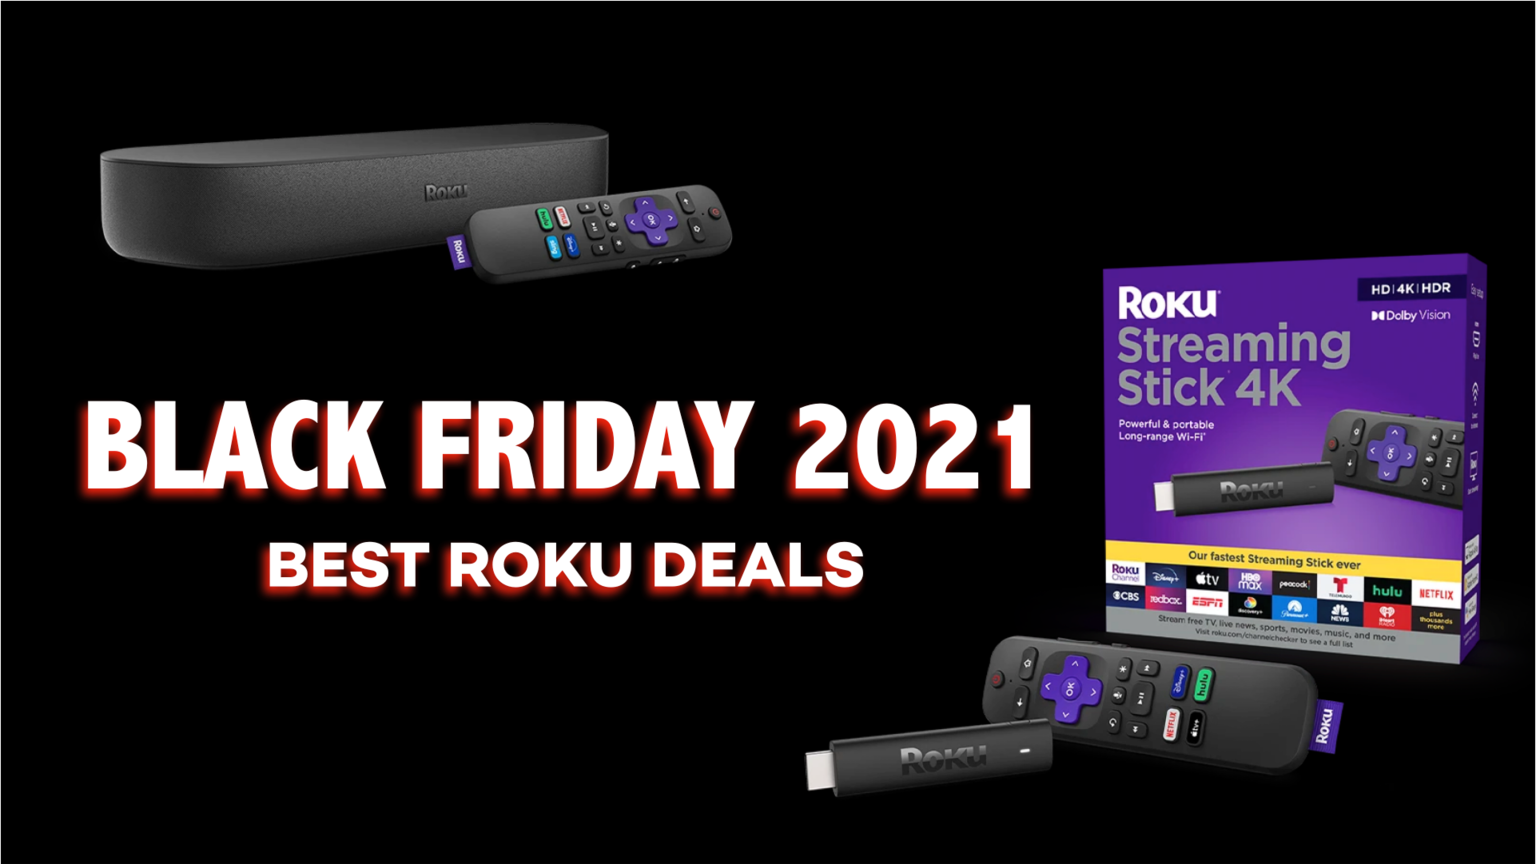 Roku Unveils 2021 Black Friday Deals, Including Up To 45 OFF Roku